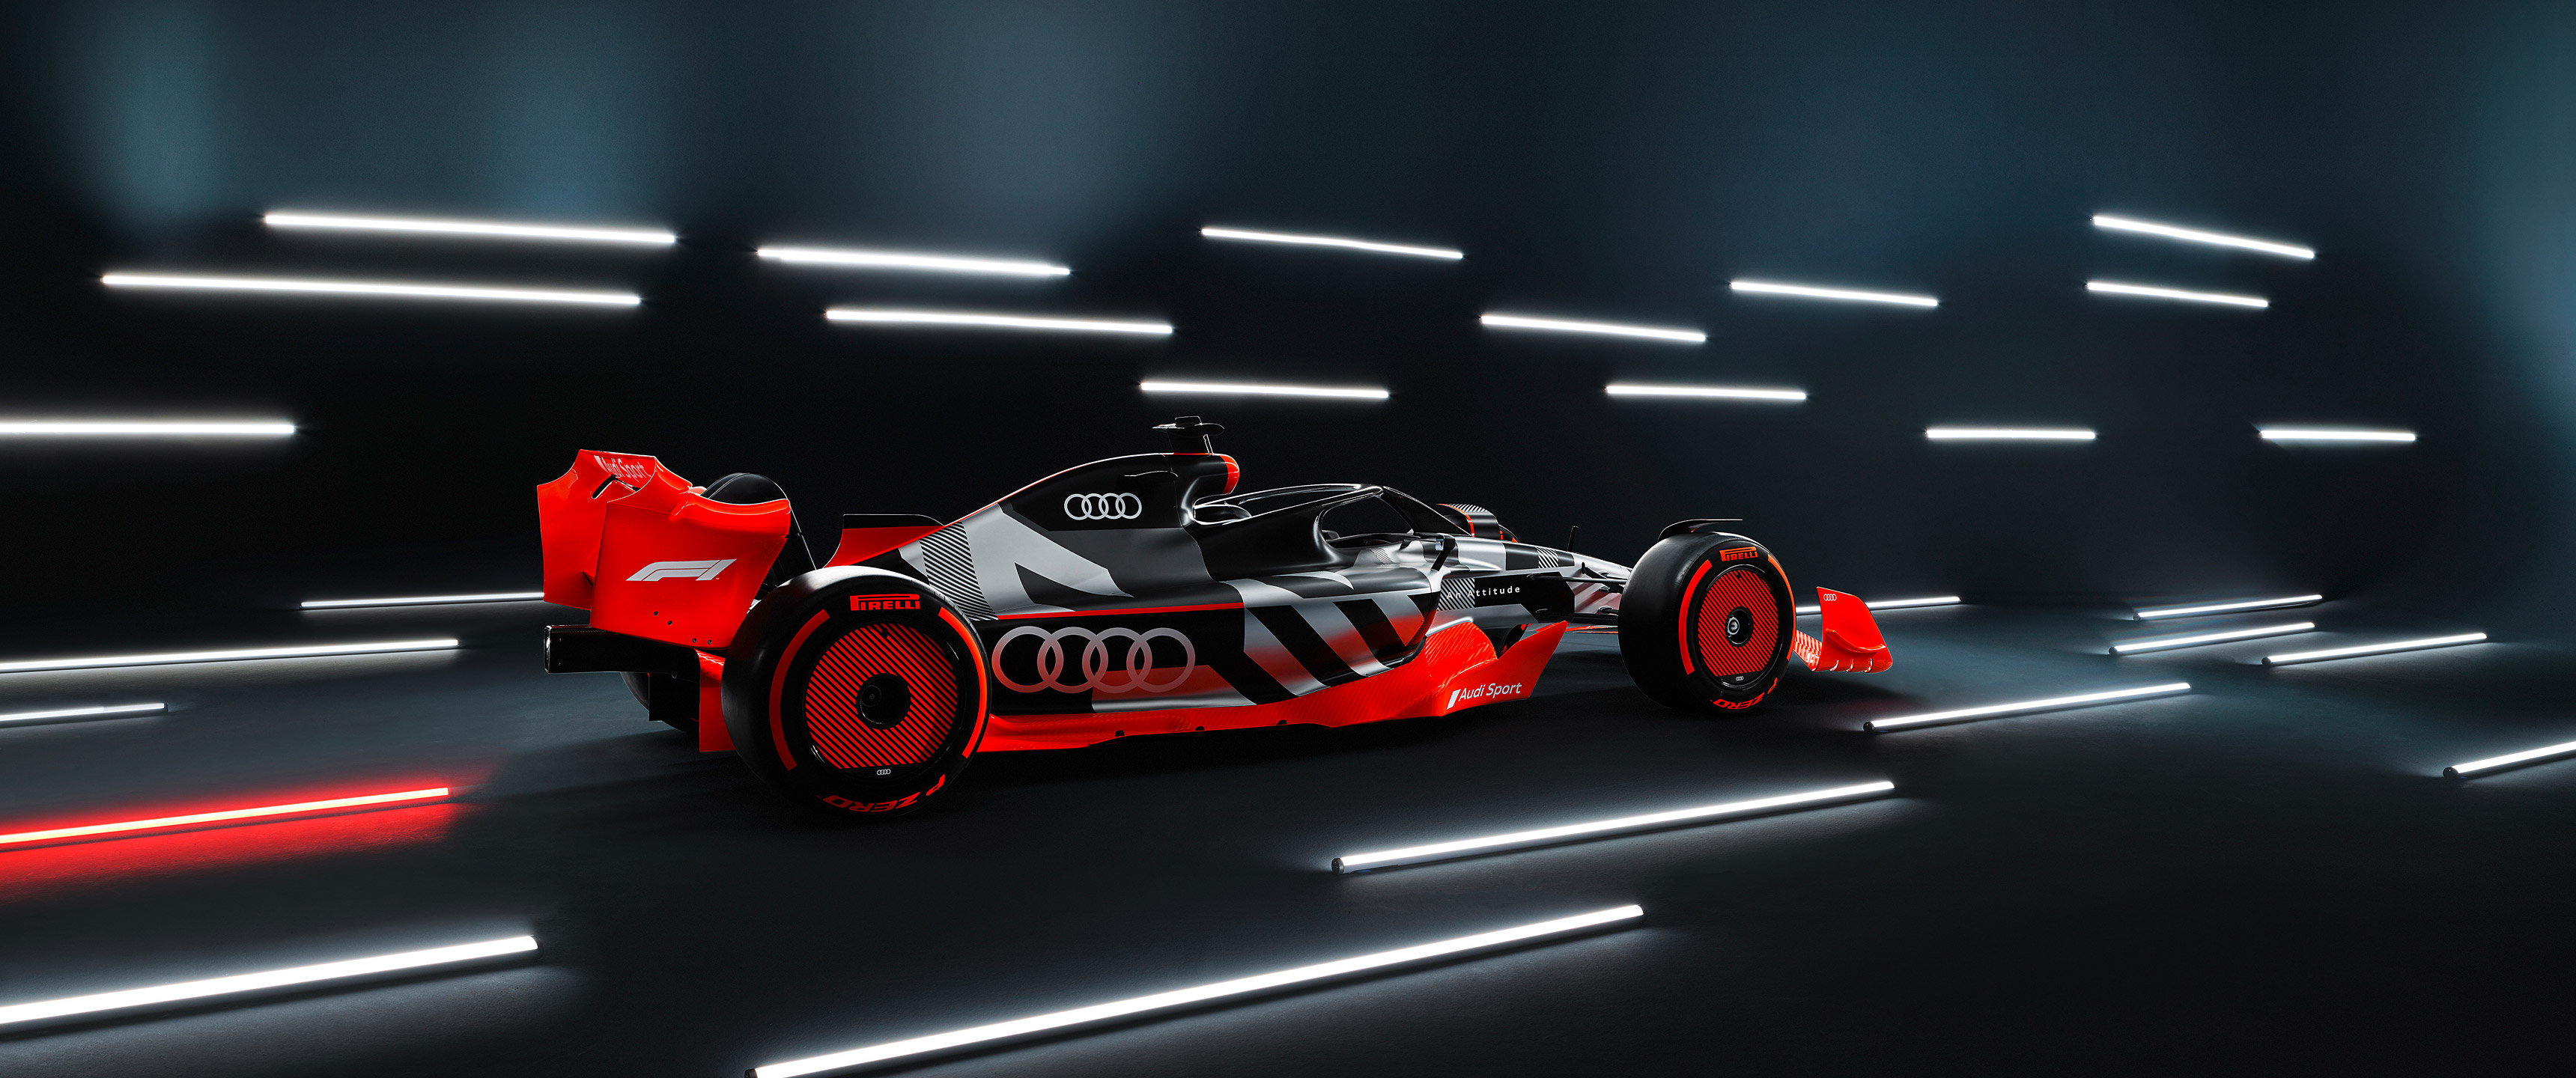  2022 Audi F1 Show Car Wallpaper.